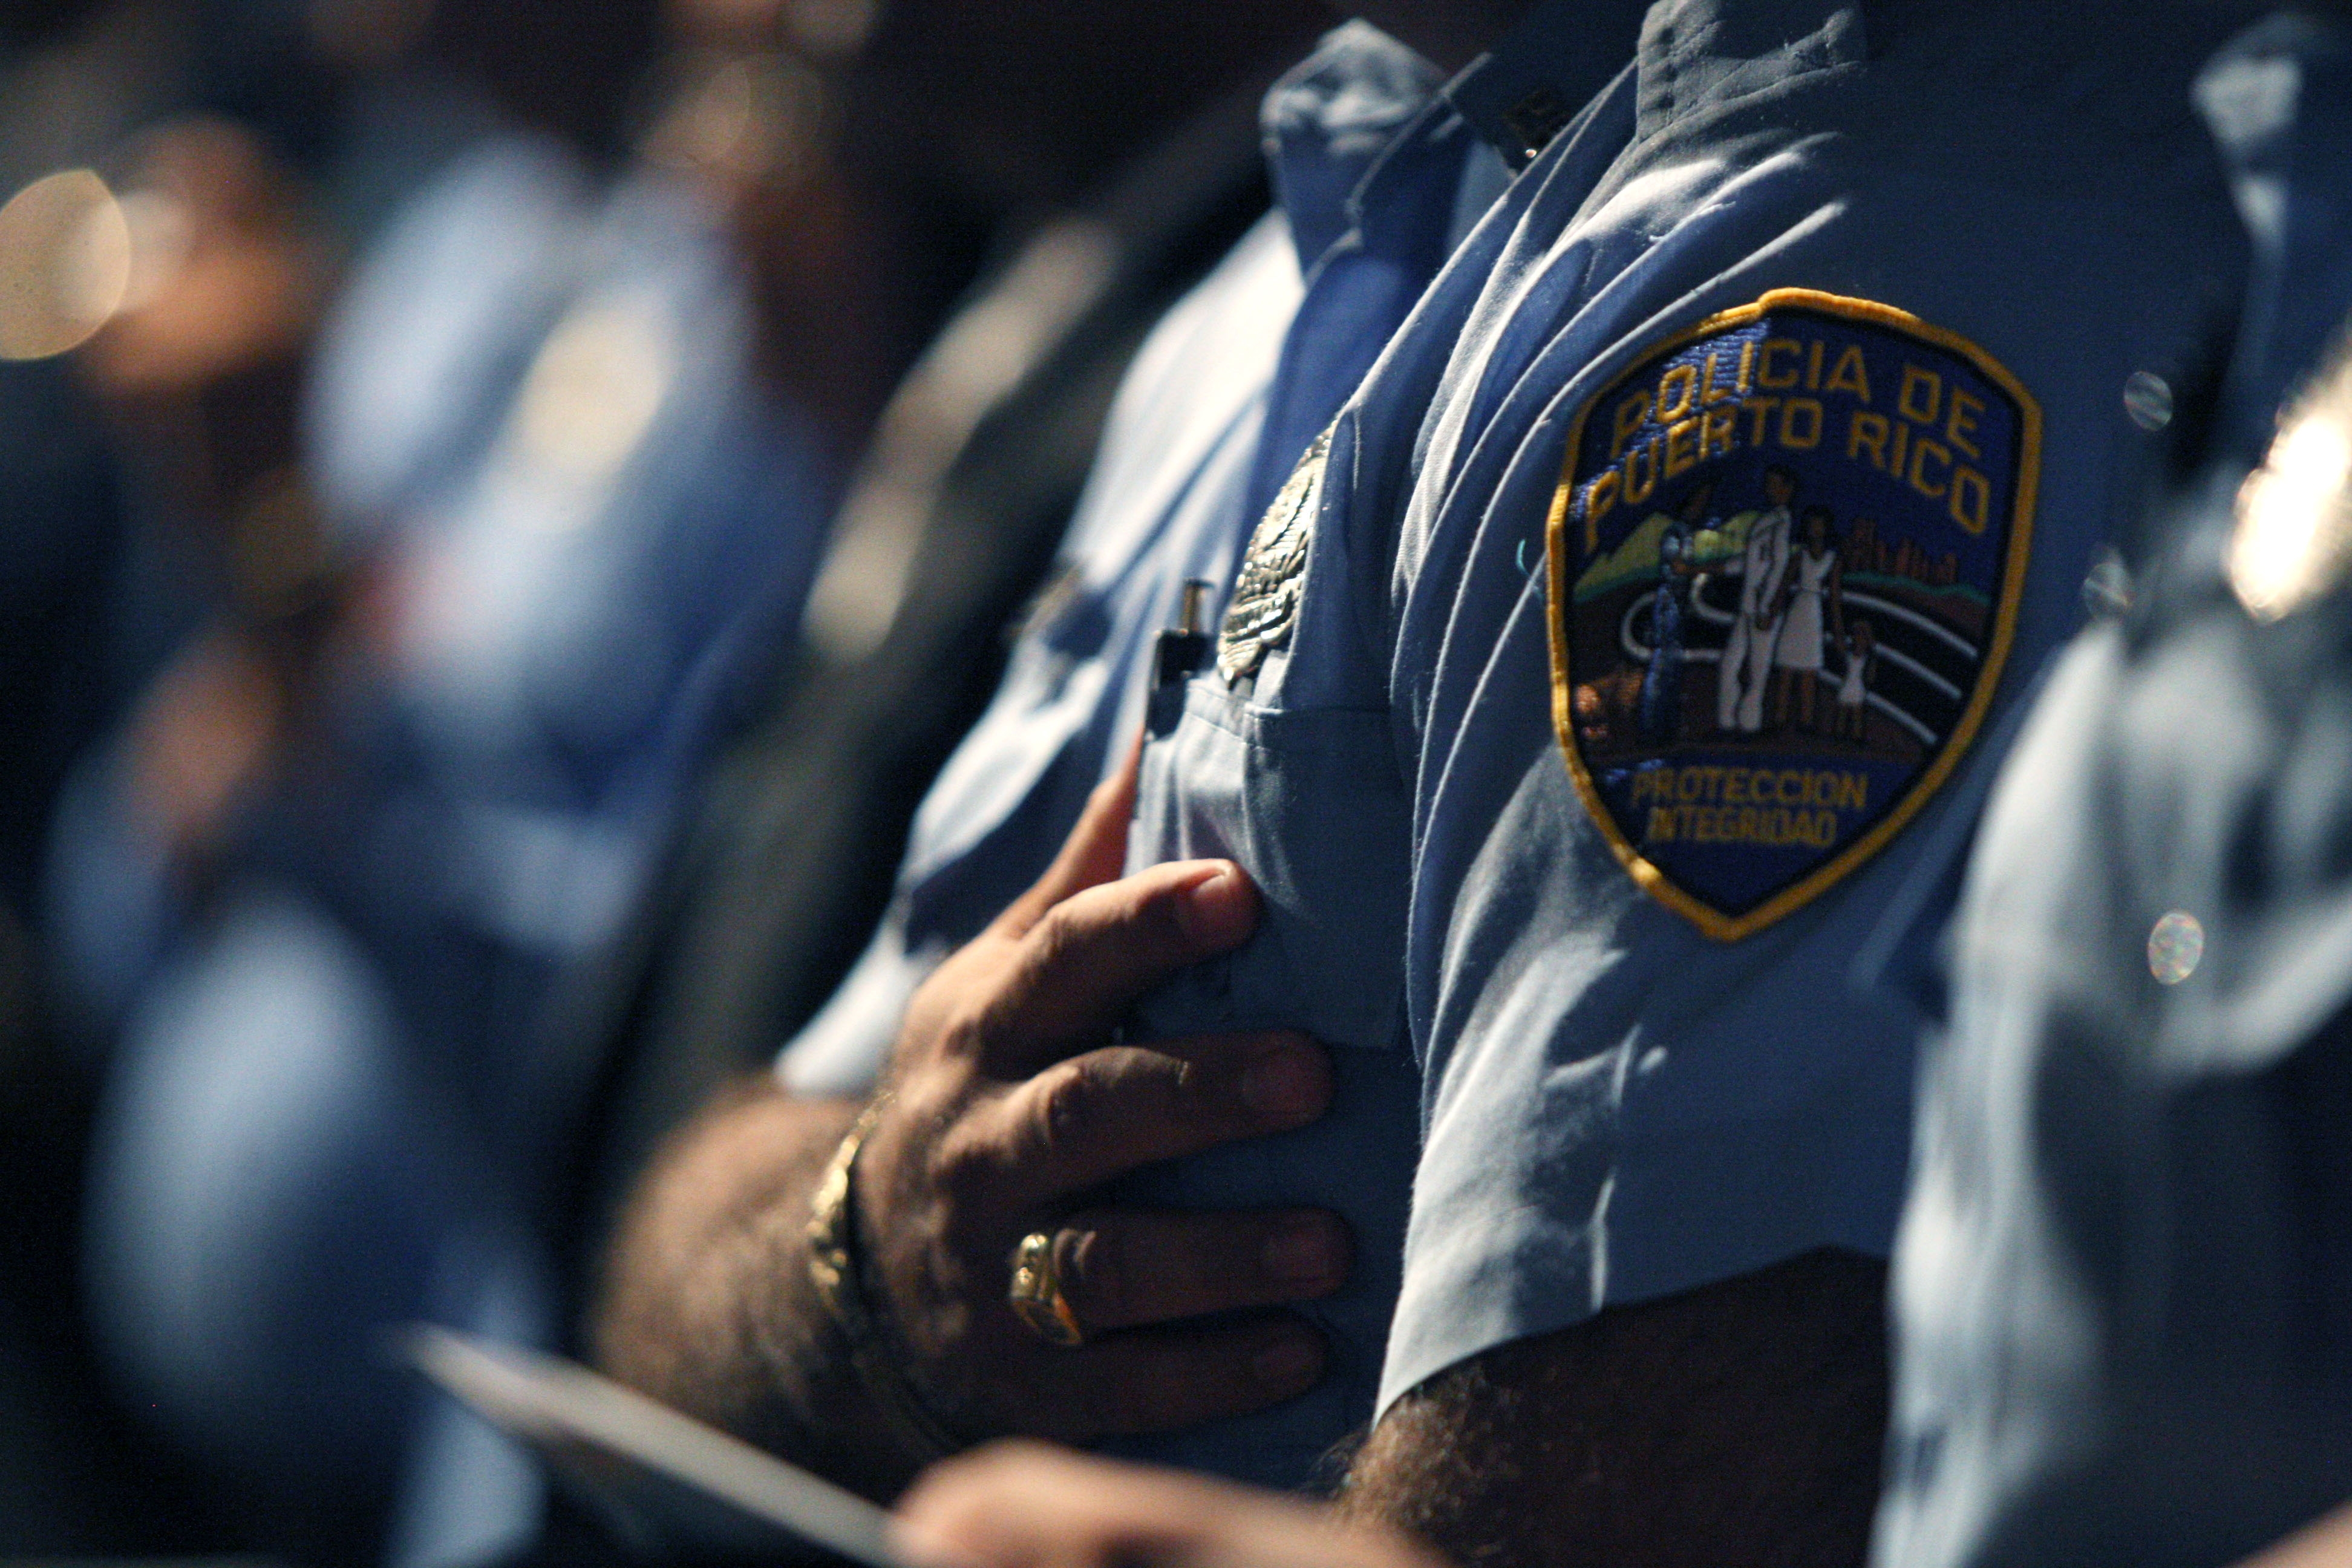 La Policía estima 1,900 oficiales ausentes y activa un plan para atender la seguridad del país